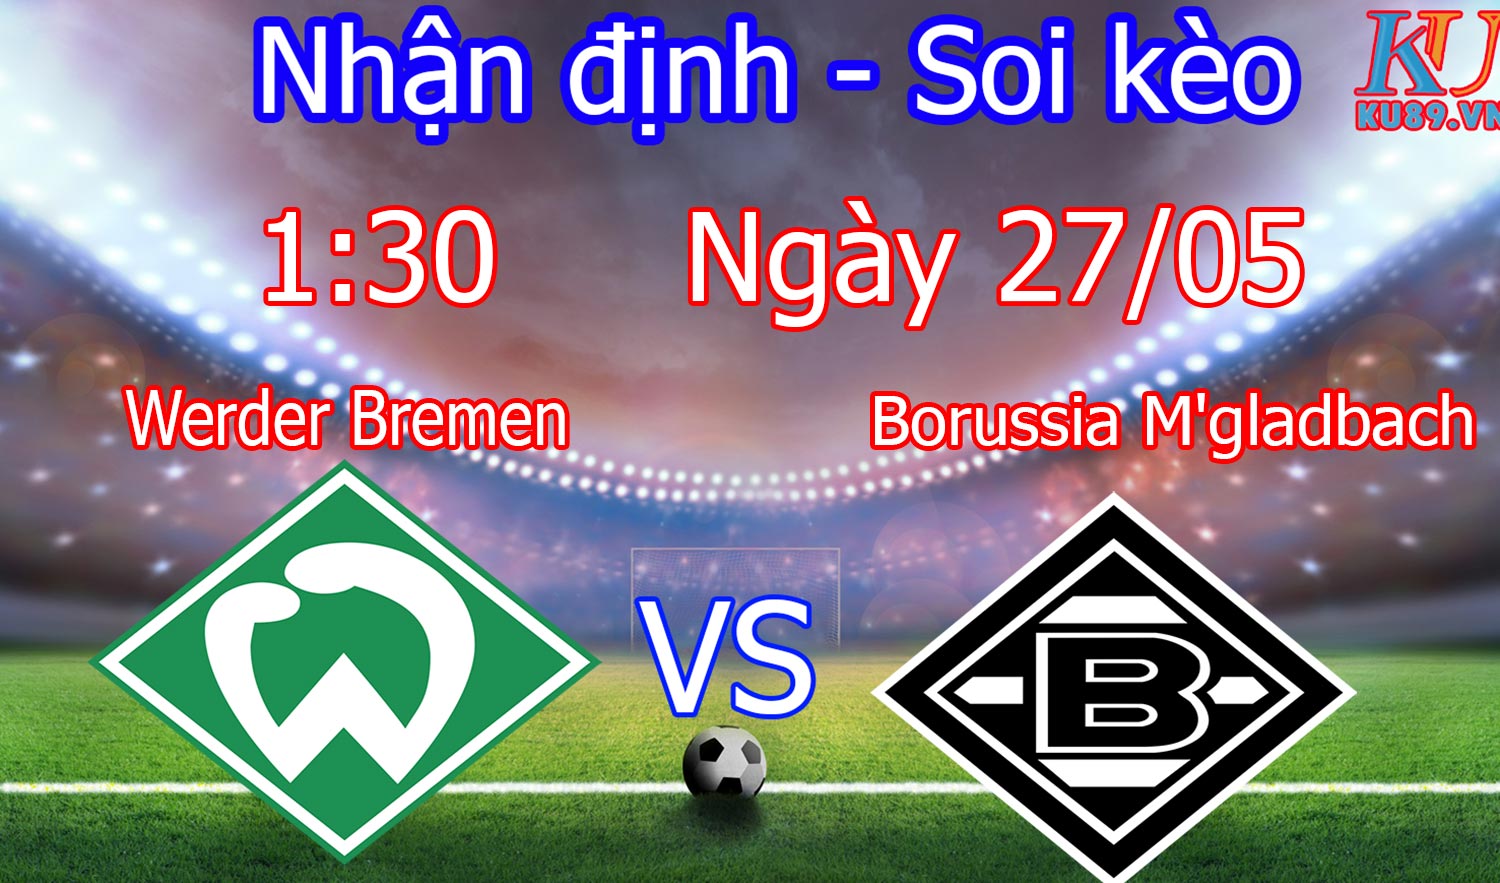 Werder Bremen – Borussia M’gladbach